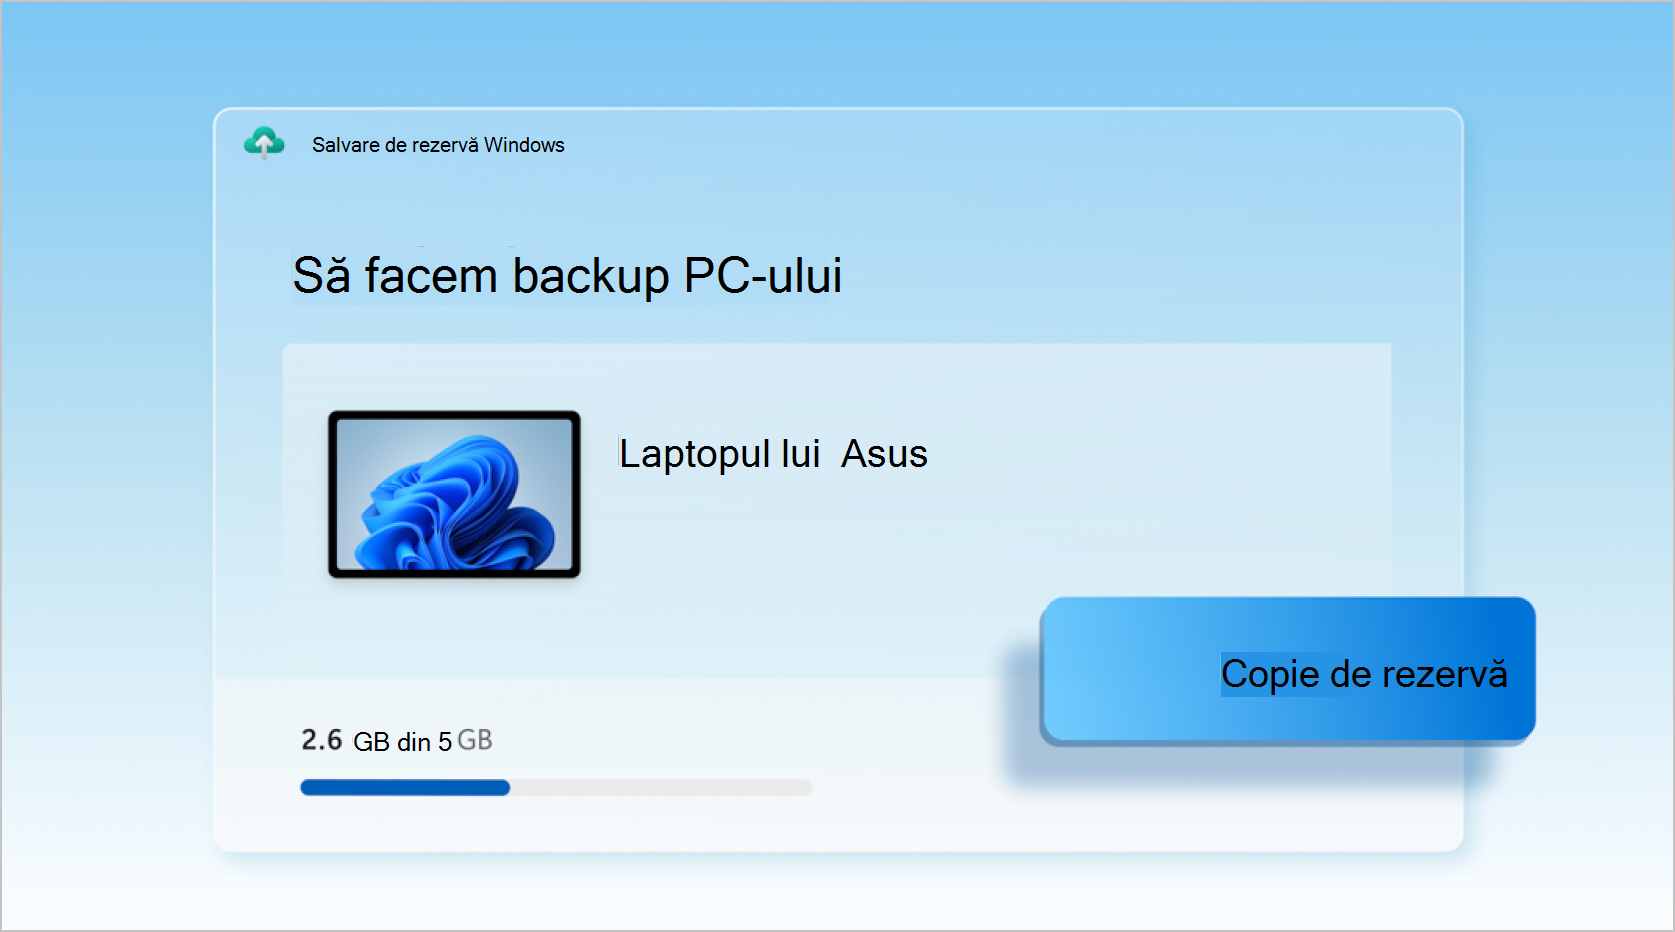 Captură de ecran cu Salvare de rezervă Windows utilizată pentru a face backup unui laptop.